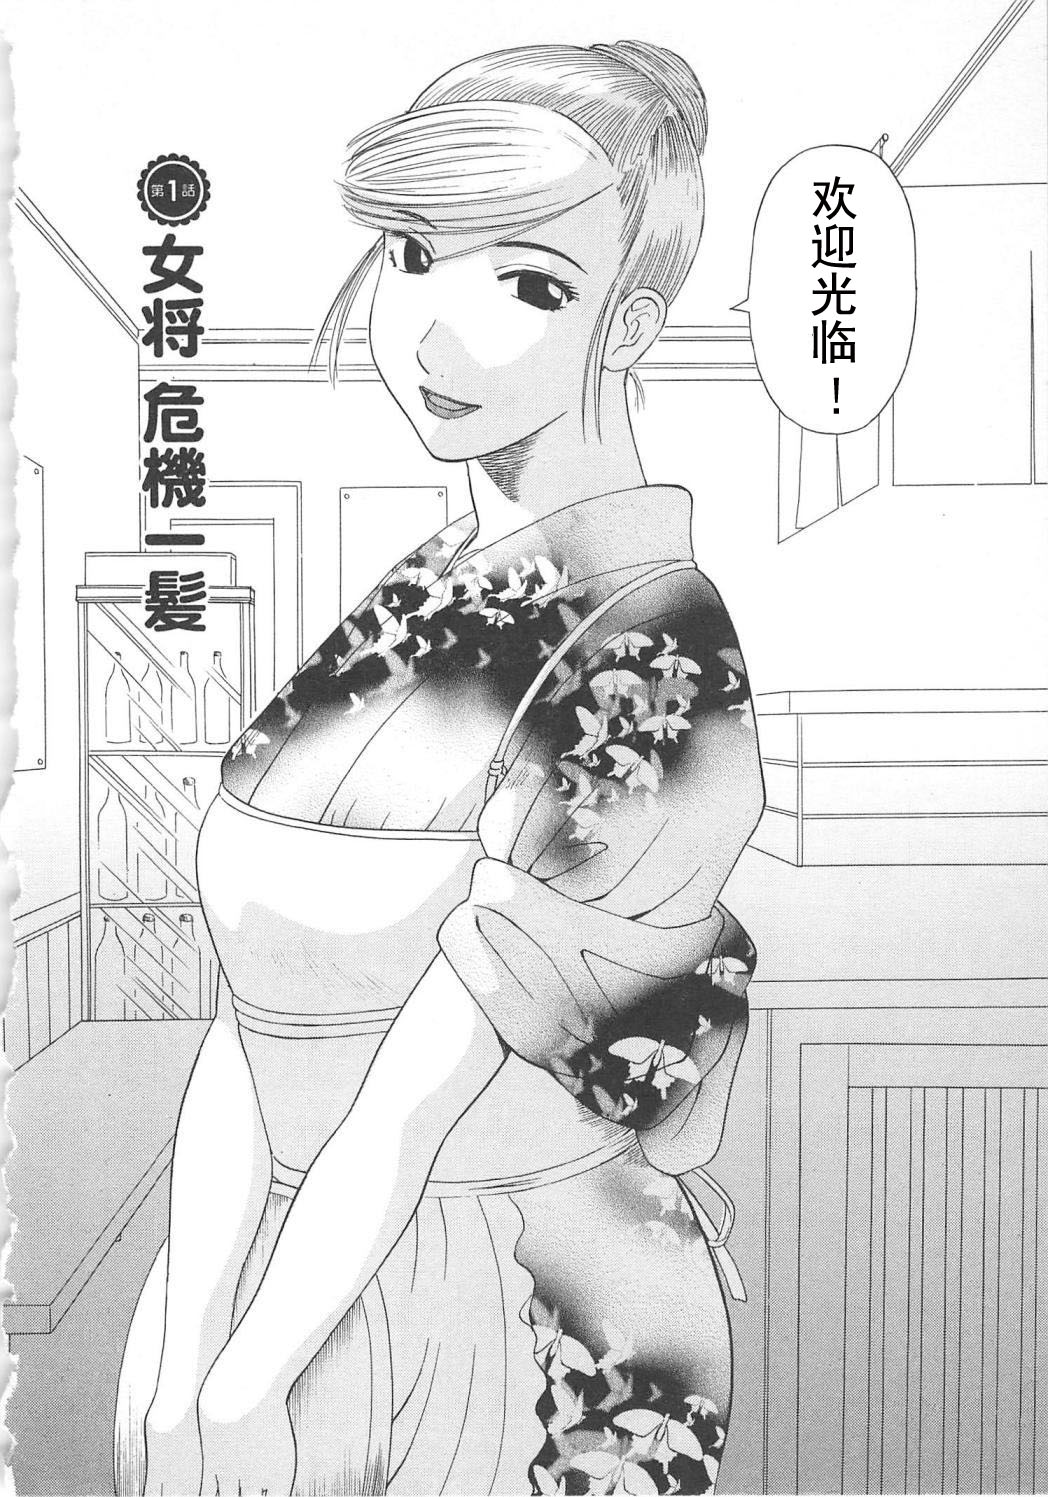 [Kawamori Misaki] Gokuraku Ladies Enjuku Hen - Paradise Ladies [Chinese] [かわもりみさき] 極楽レディース Vol. 5 艶熟編 [中文]